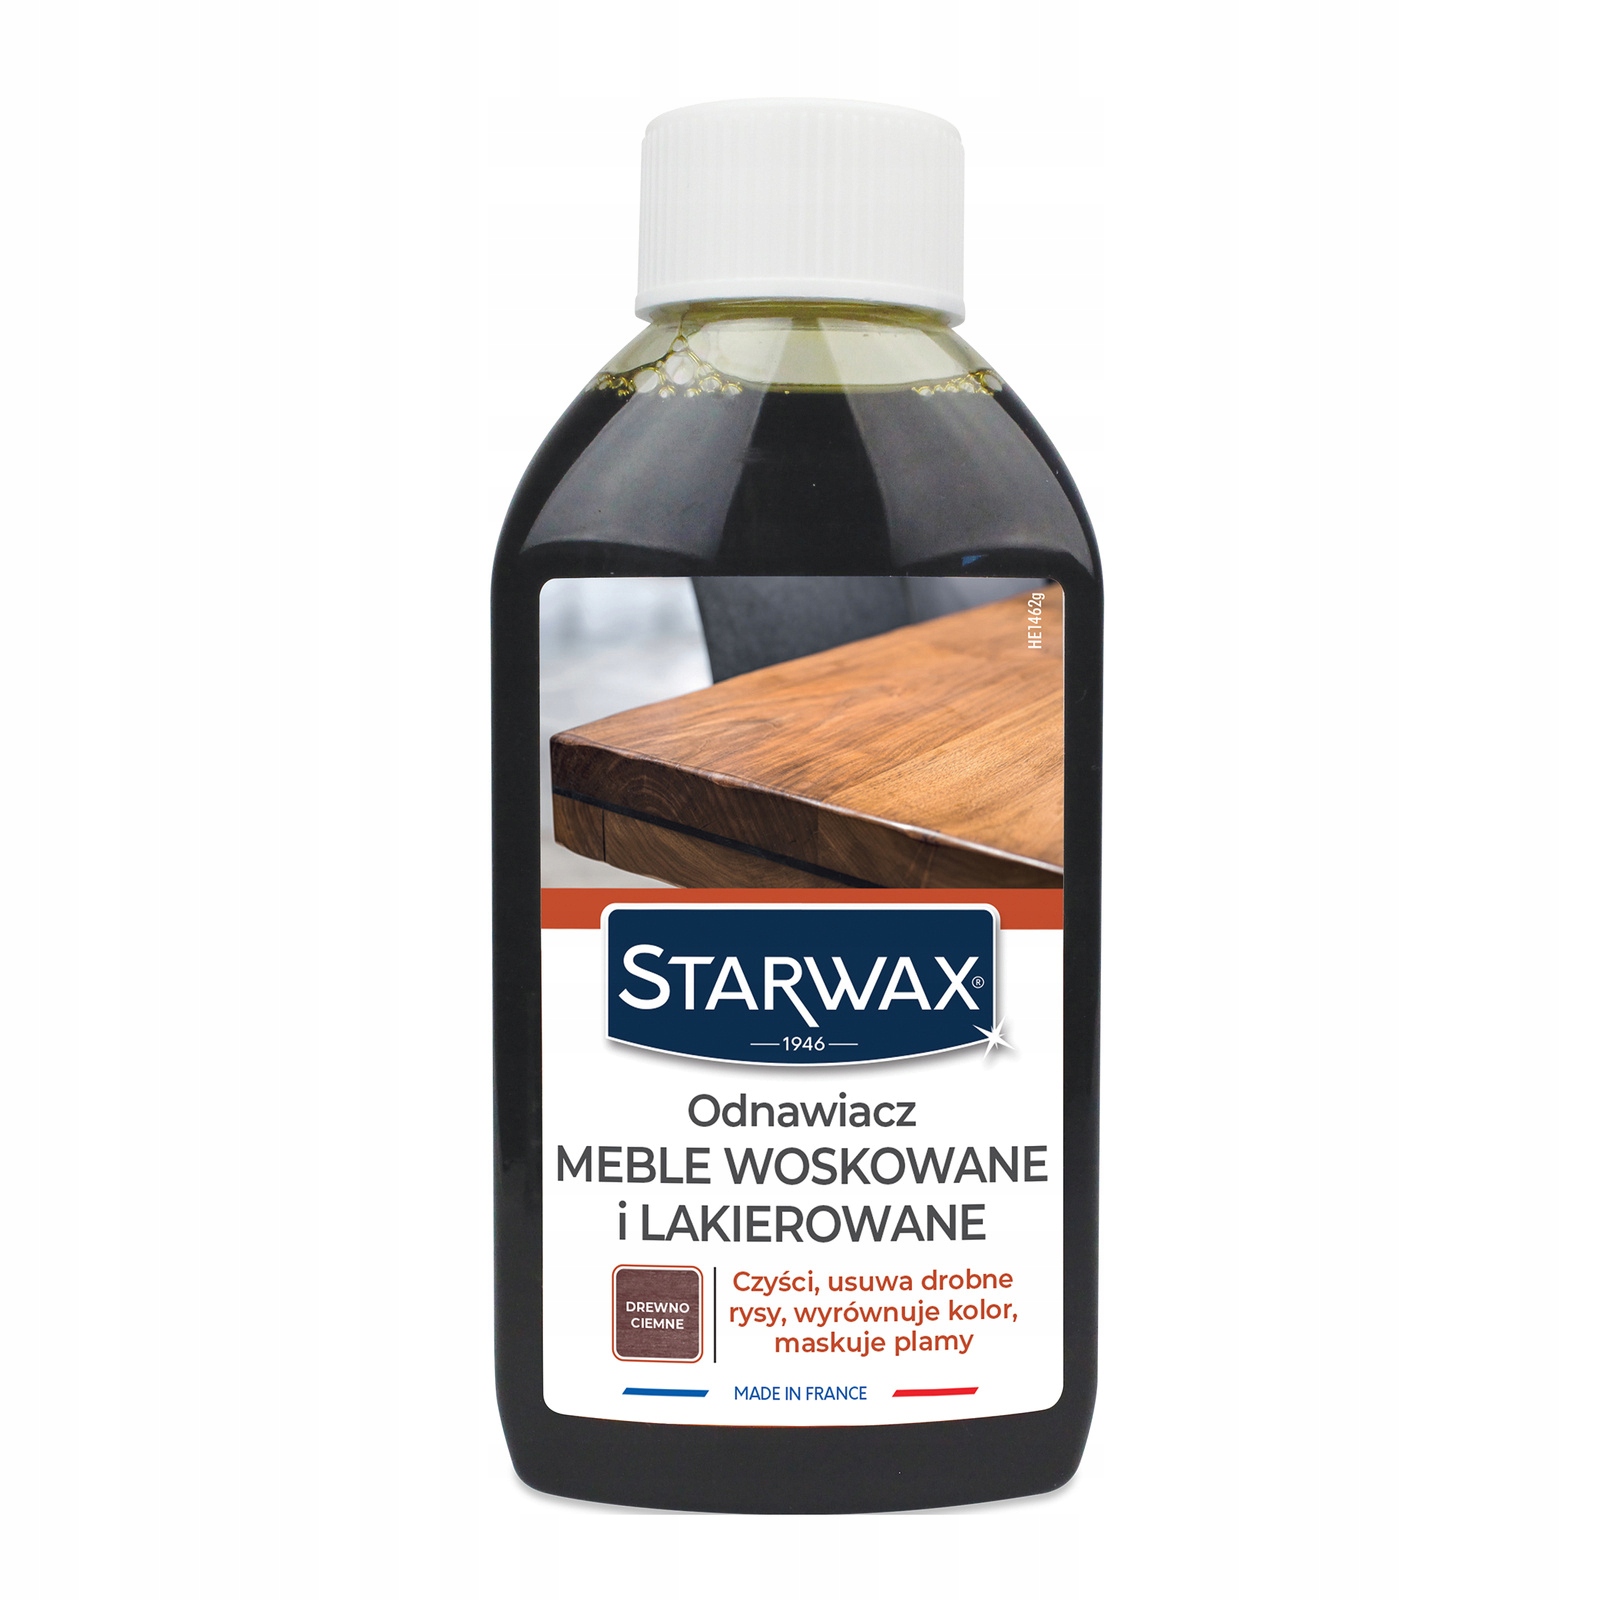 

StarWax Odnawiacz do mebli Drewno ciemne 250ml